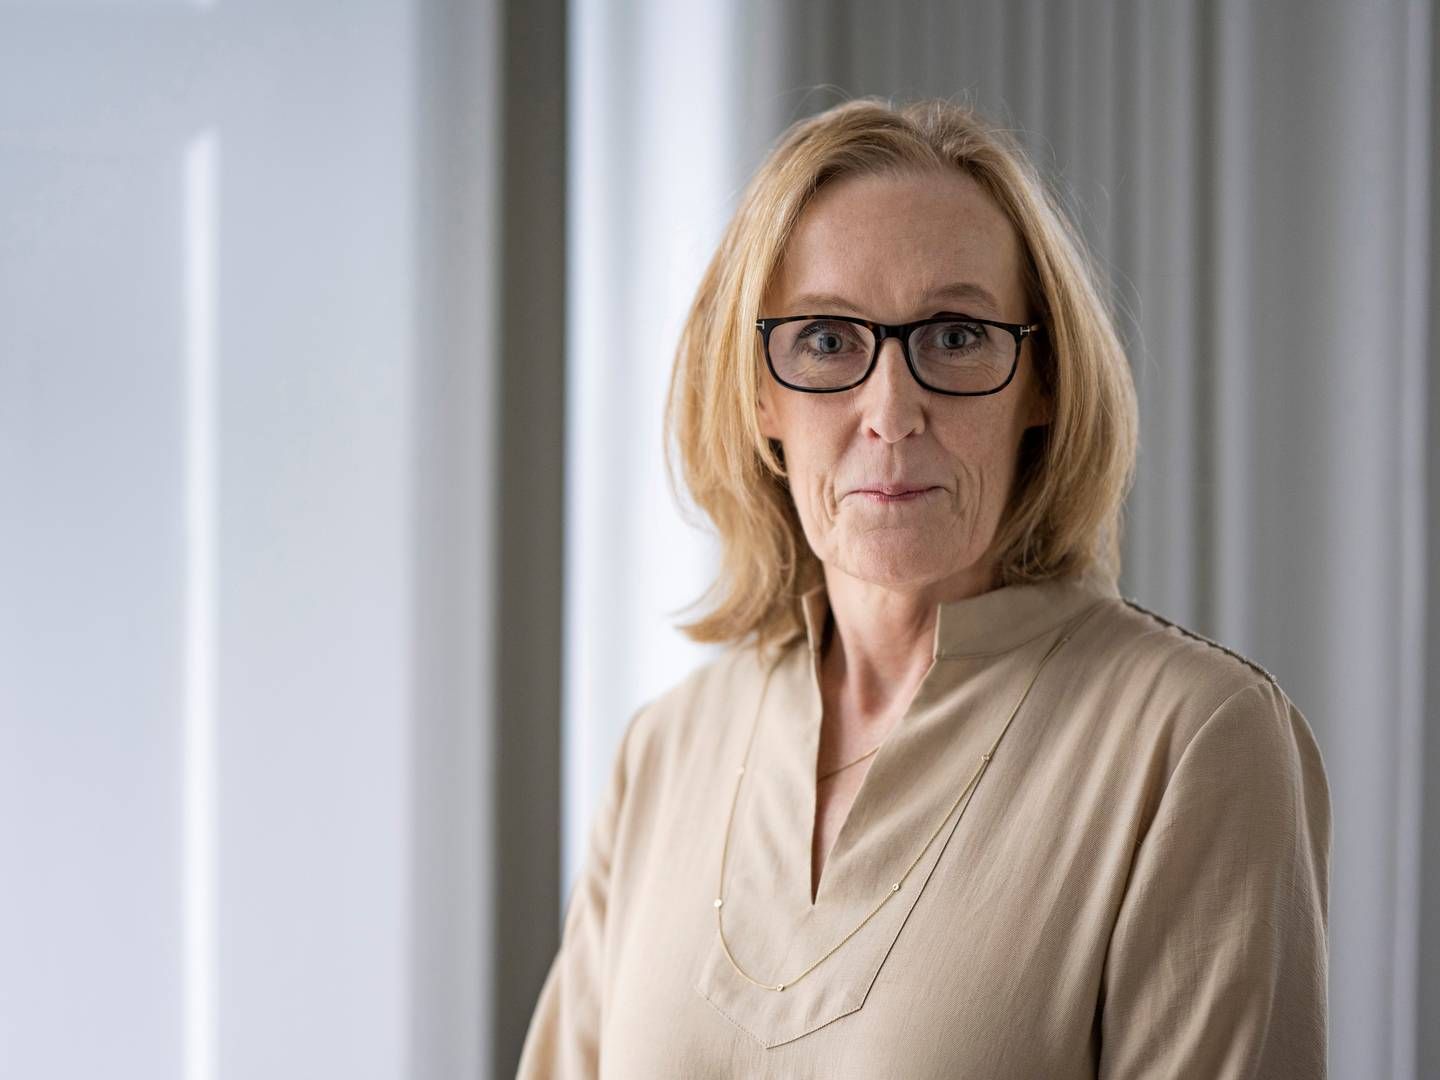 Marianne Simonsen stoppede som direktør i Finansiel Stabilitet lige før jul. | Foto: Pr